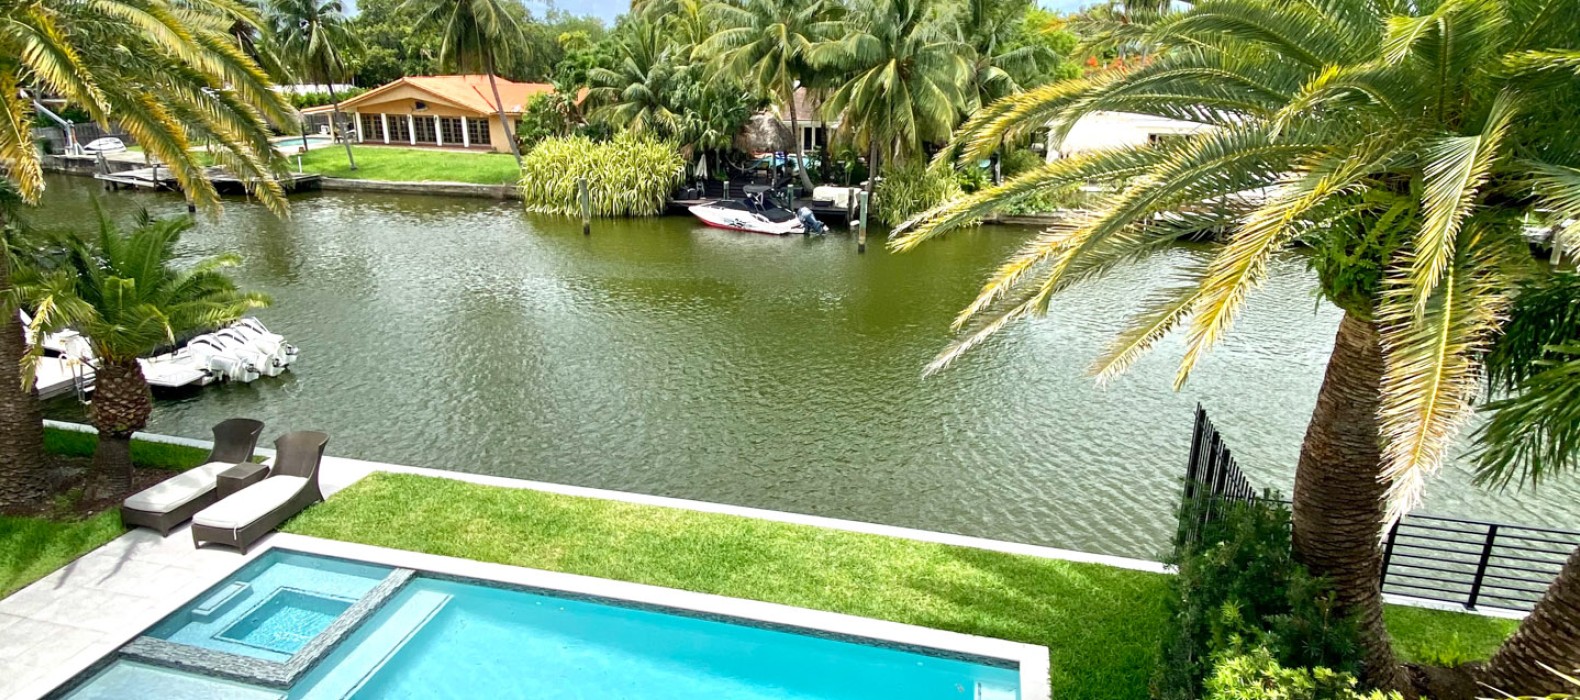 Exterior view of Villa Alea in Miami